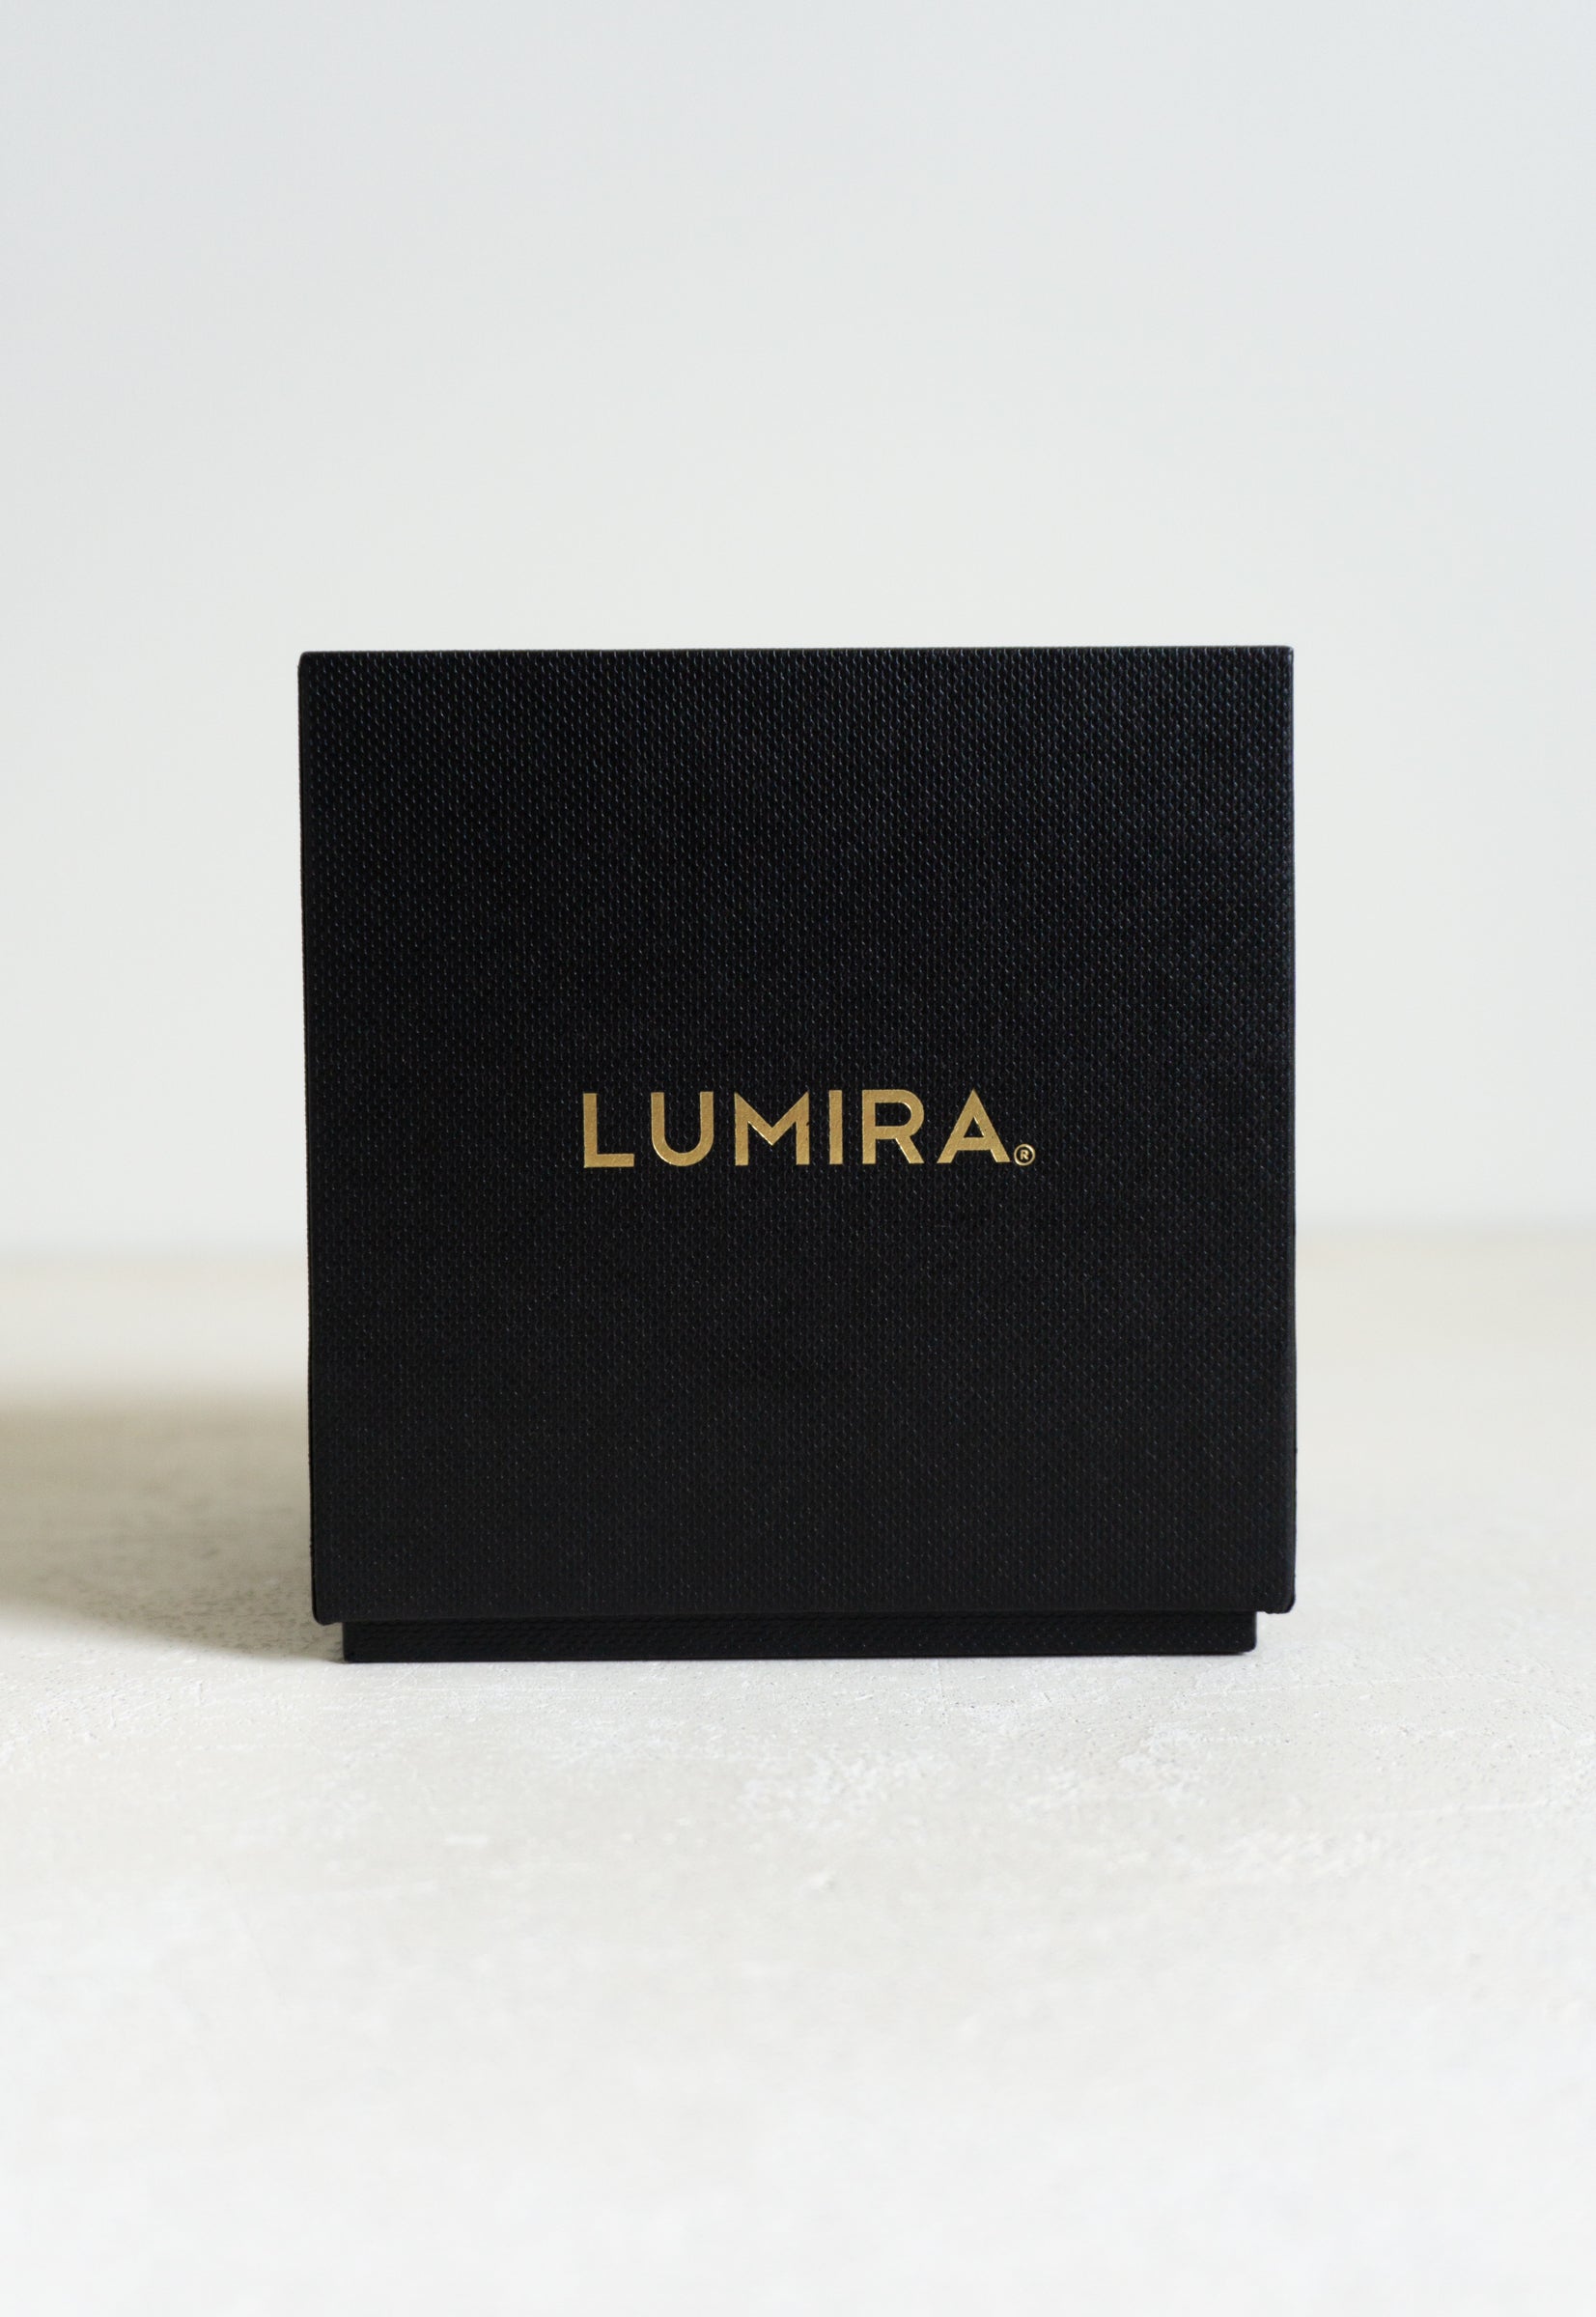 Lumira Candle